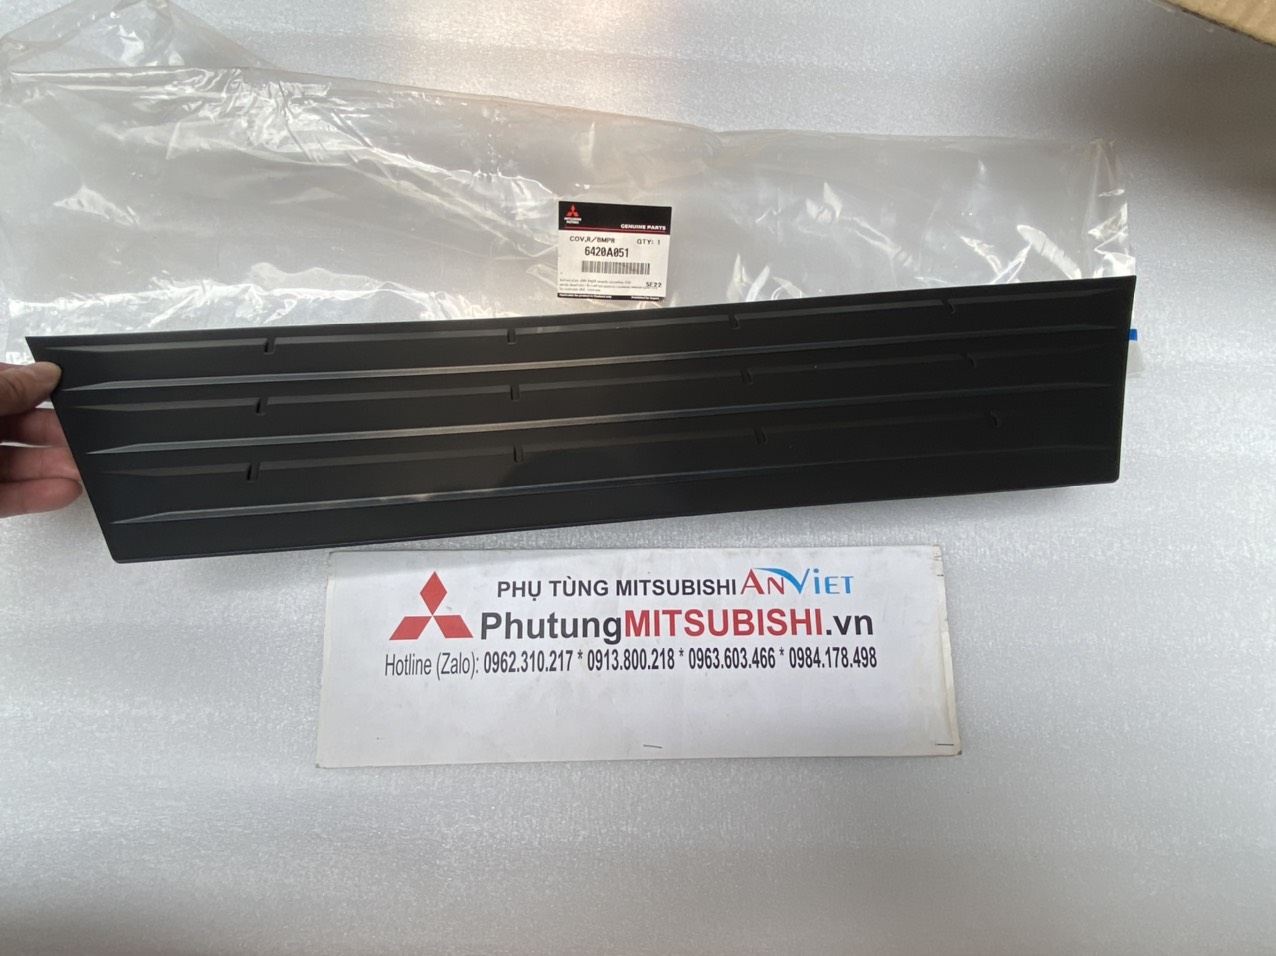 Ốp nhựa đen trên ba đờ sốc sau xe mitsubishi Triton 2019-2025